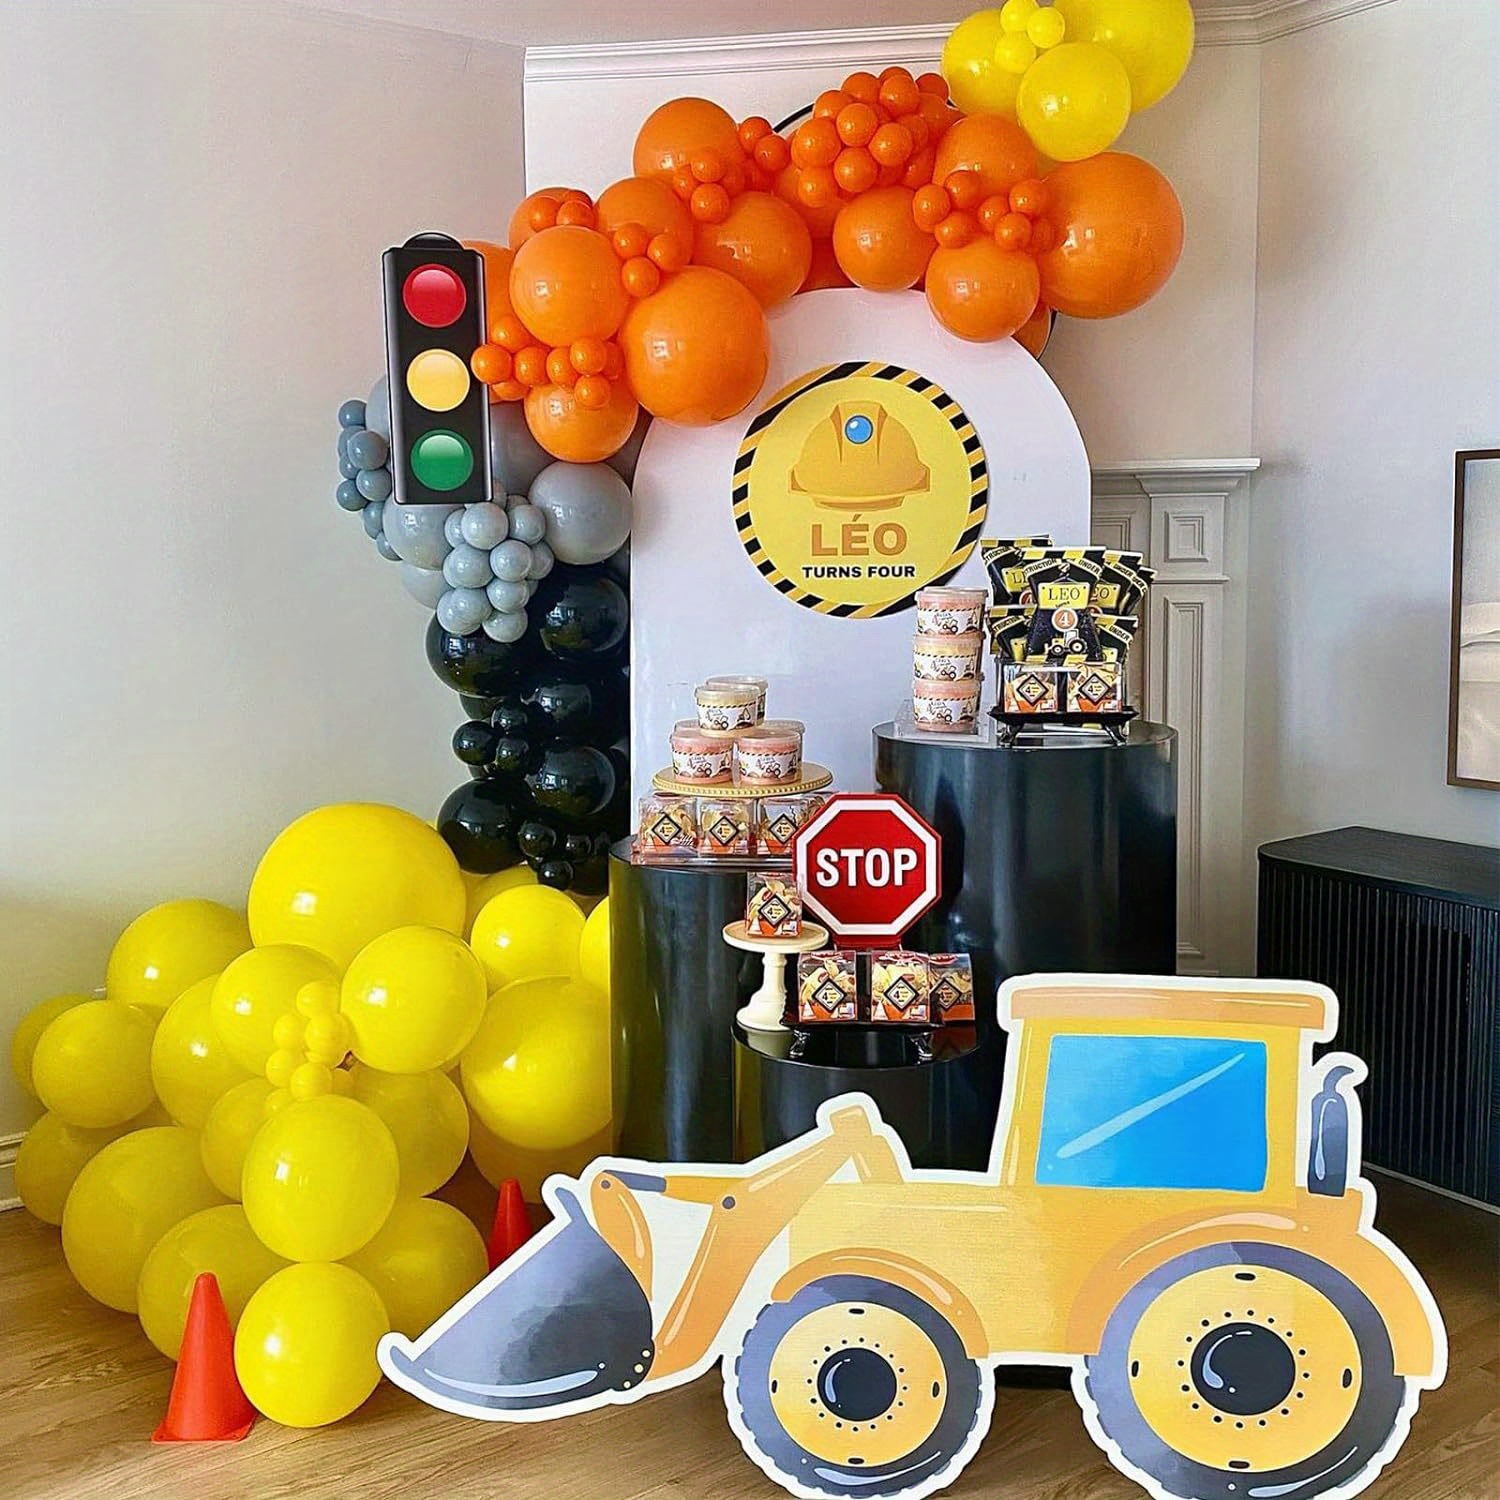  kreat4joy Decoraciones de fiesta de cumpleaños de construcción  de 3 años, decoraciones de tercer cumpleaños para niños, arco de globos  negro, amarillo y naranja, camión volquete número 3, globo de aluminio